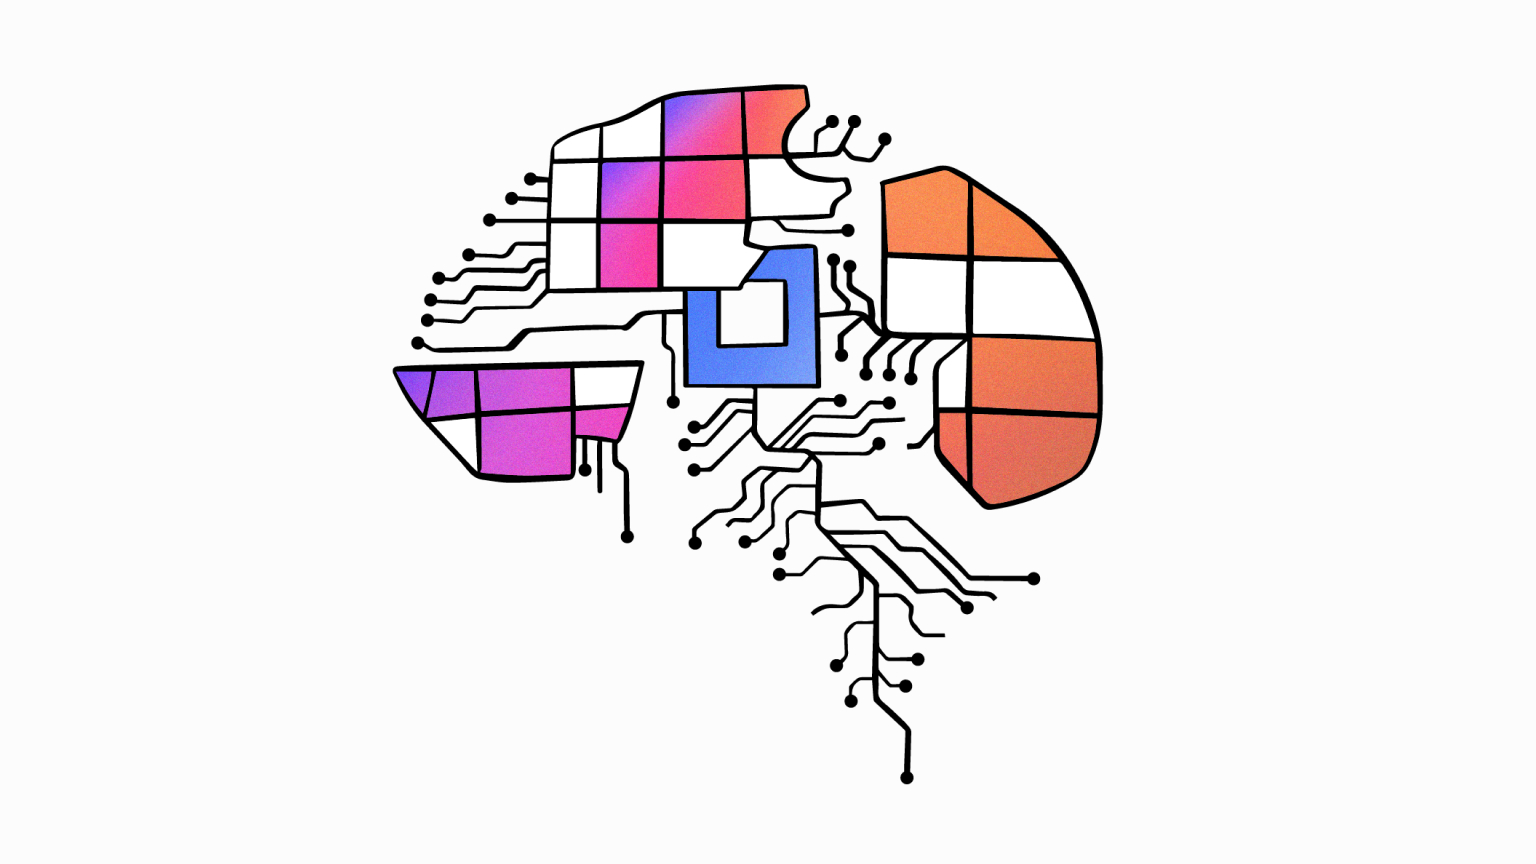 Brain illustration symbolizing few-shot learning AI training methods